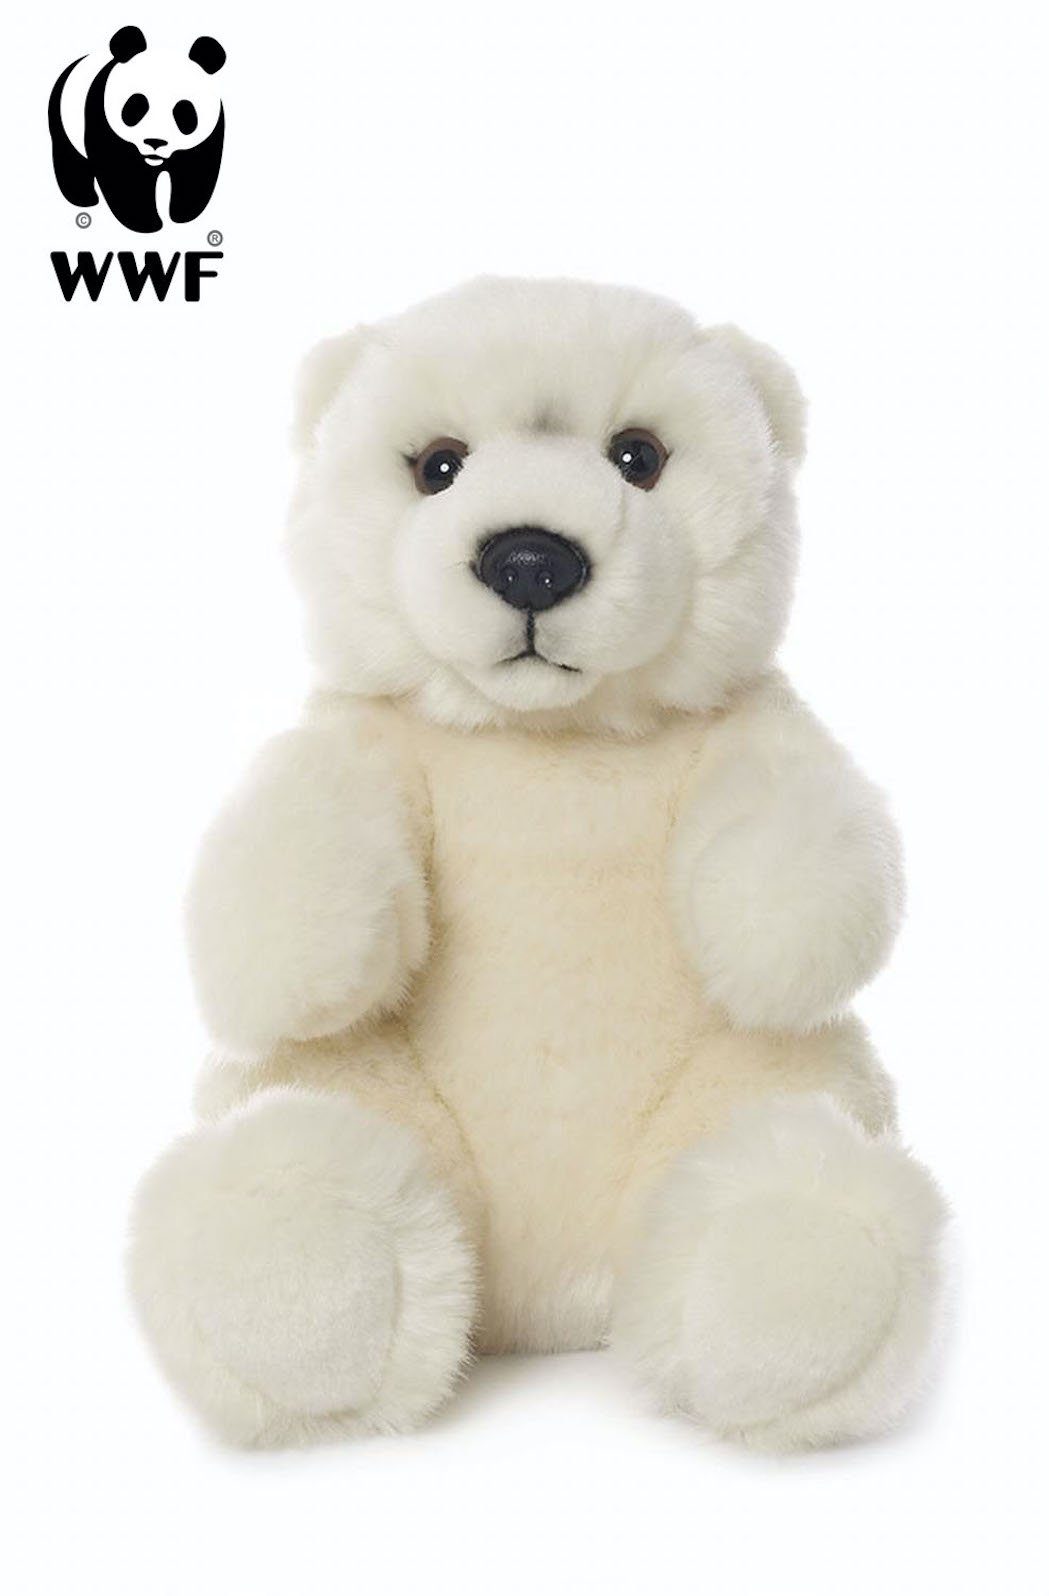 WWF Kuscheltier Plüschtier Eisbär (sitzend, 15cm)